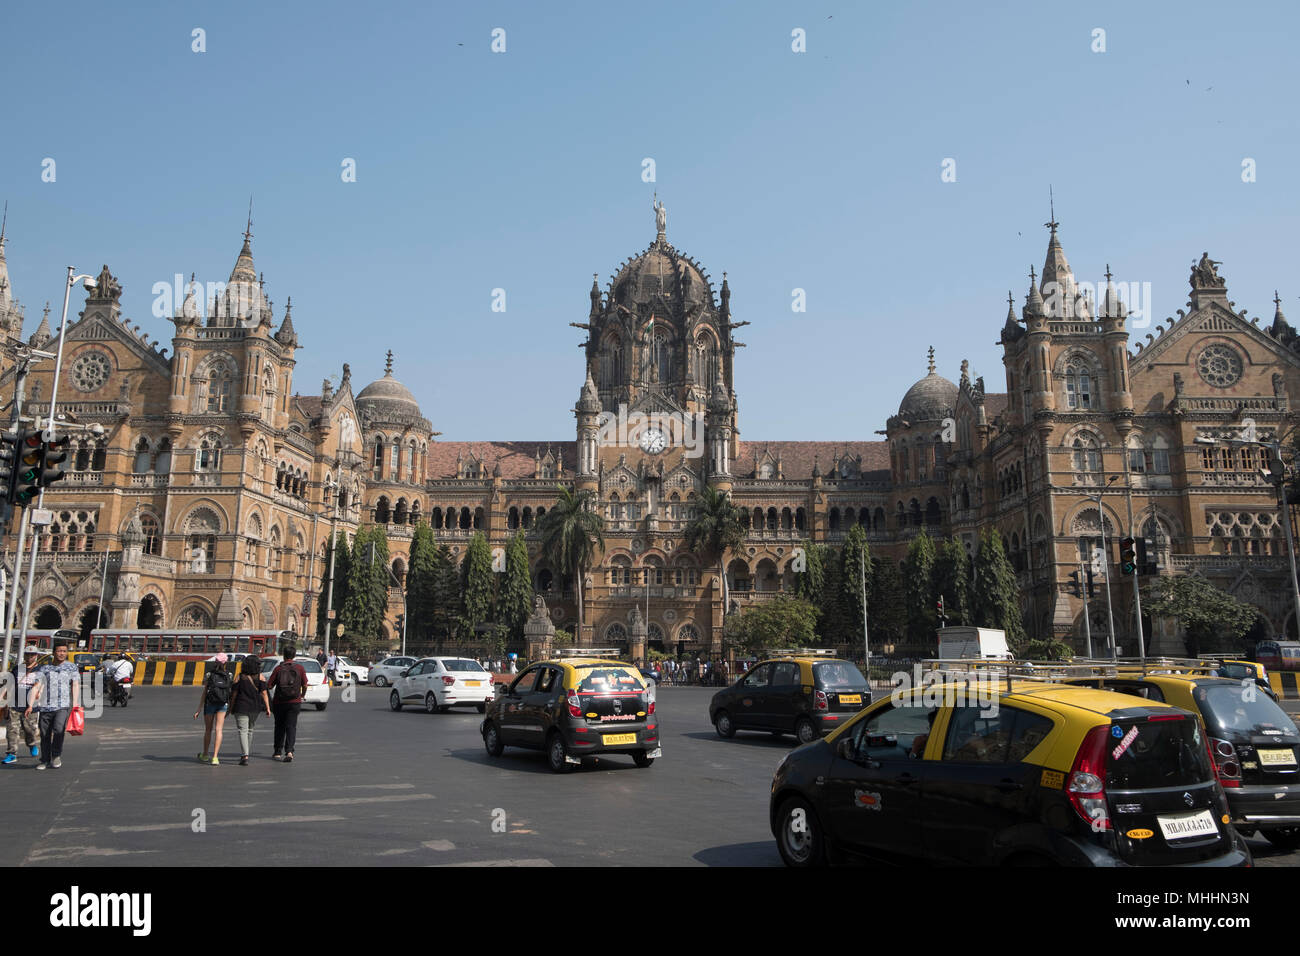 Inde - Bombay - La Gare Chhatrapati Shivaji, autrefois connu sous le nom de Victoria Terminus. La gare centrale, est un site du patrimoine mondial de l'UNESCO. La station a été conçu par Frederick William Stevens d'après le concept de l'architecture néo-gothique victorien italianisant et destiné à être un revival of Indian similaires Goth (époque classique). La station a été construite en 1887 dans la région de Mumbai Bori Bunder pour commémorer le Jubilé de la reine Victoria Banque D'Images